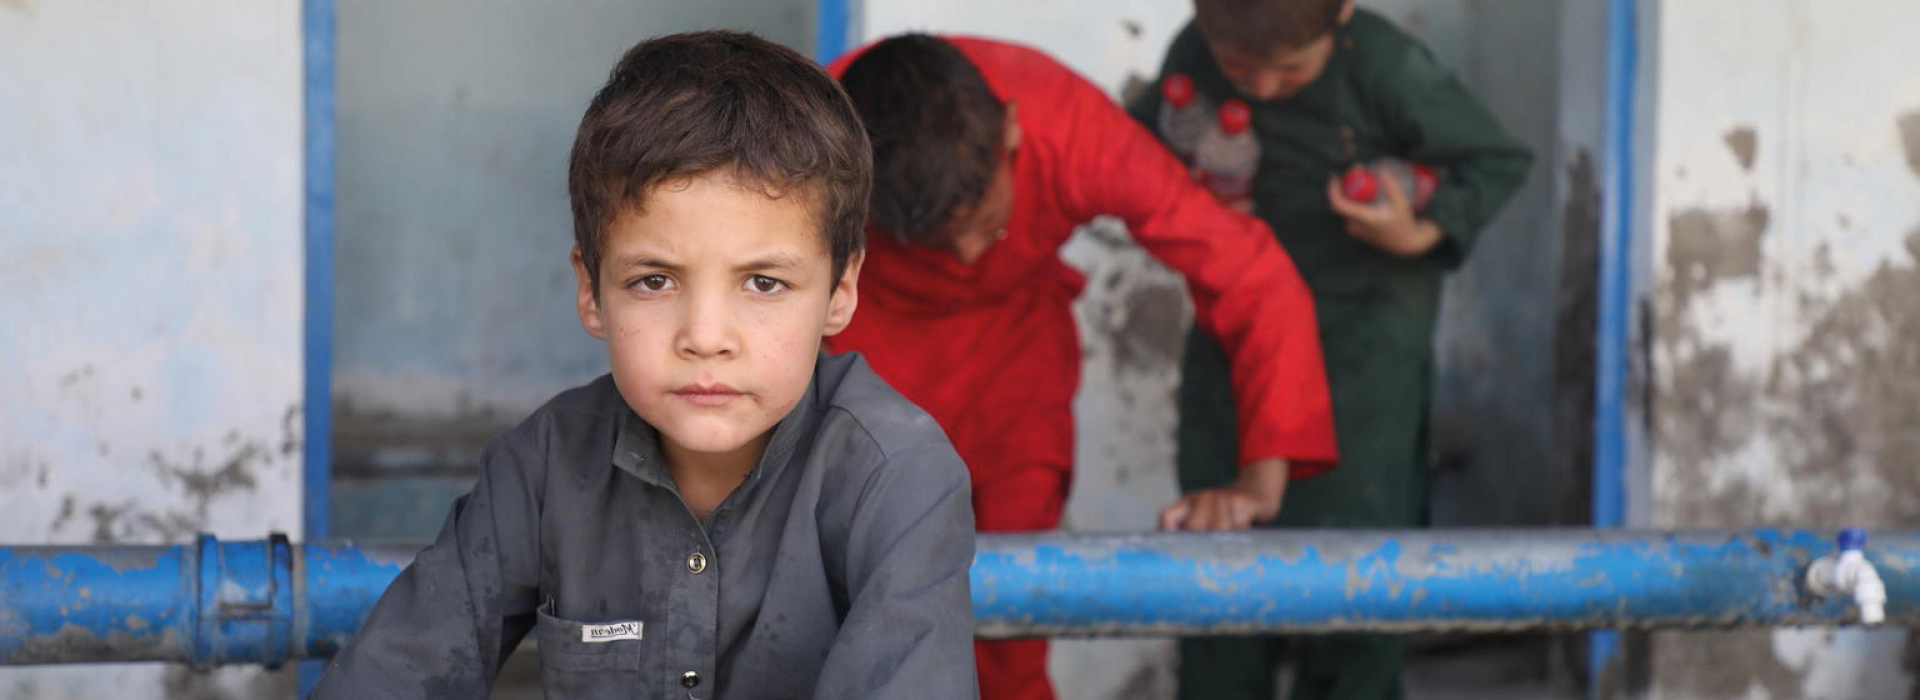 Afganistan'ın 30 milyon nüfusunun yarısı 18 yaşın altında çocuklar. Çocuklar devam eden çatışmalar, yerinden edilme, kötü ekonomik durum, zararlı sosyal normlar ve uygulamalar nedeniyle aşırı şiddet ve istismar durumlarına maruz kalıyorlar. 
